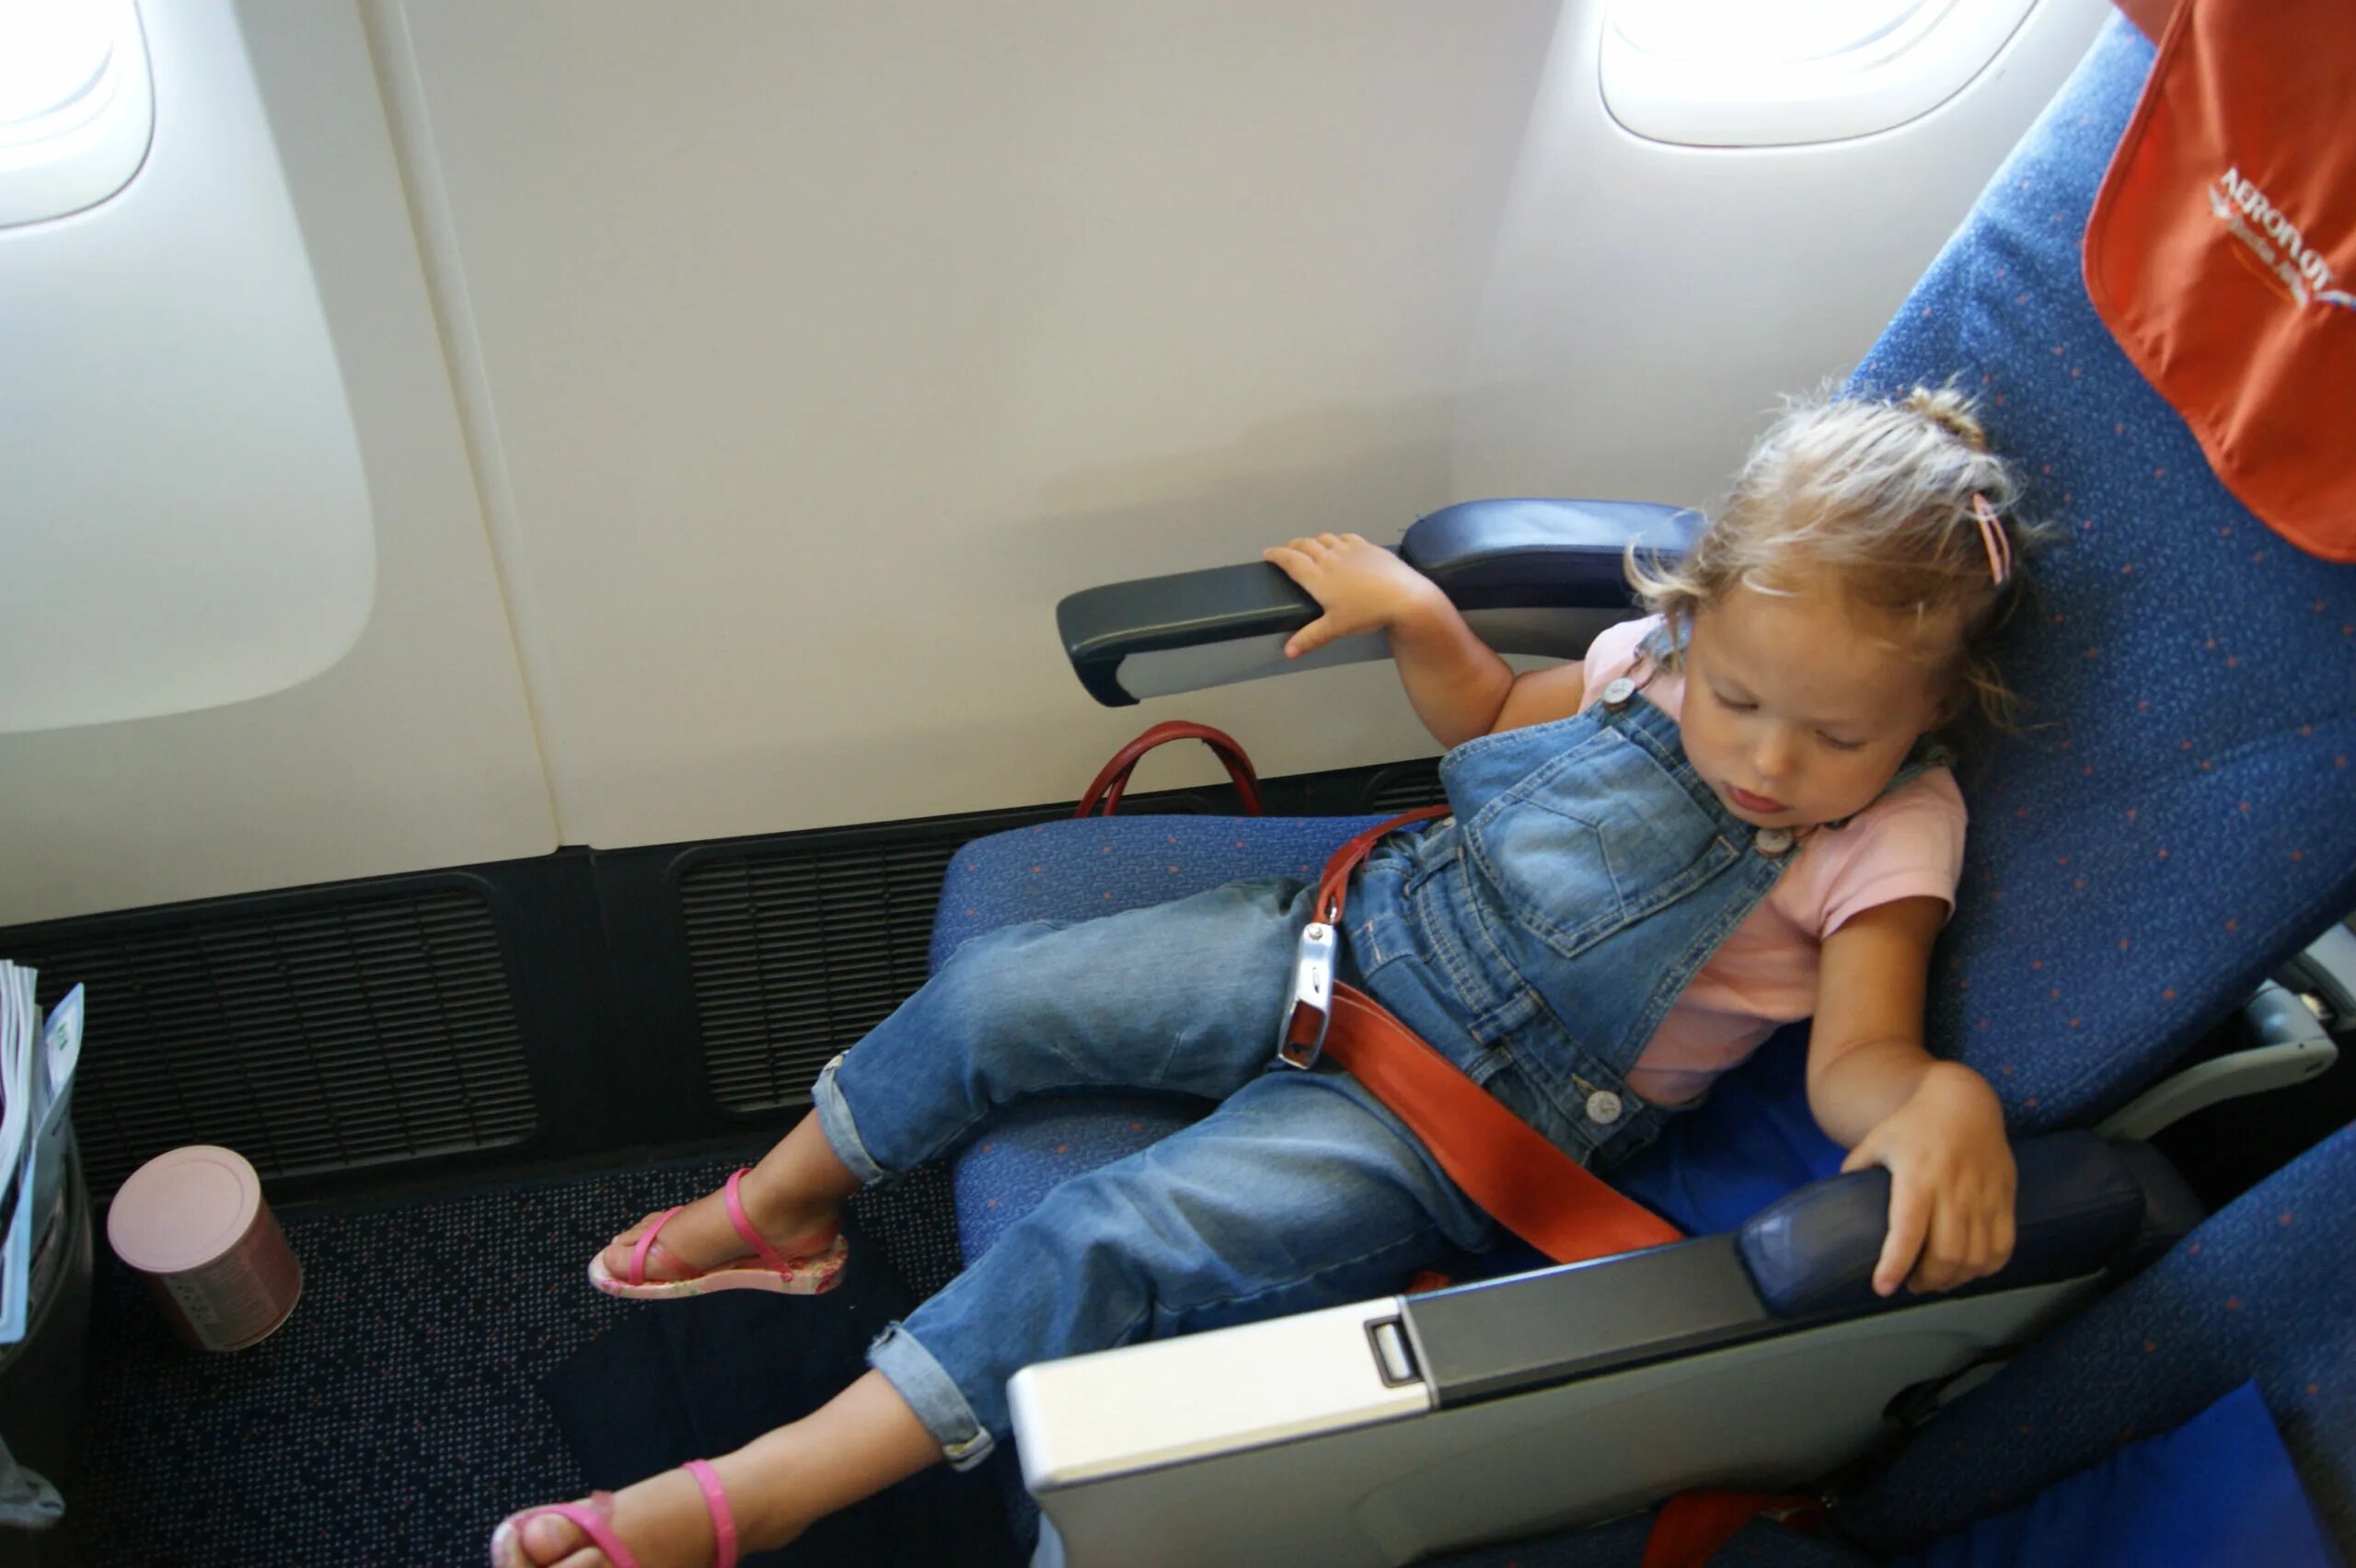 Аэрофлот места для младенцев. Детское кресло в самолете Аэрофлот. Развлечение детей в самолете Аэрофлот. Места для инвалидов в самолете Аэрофлот.